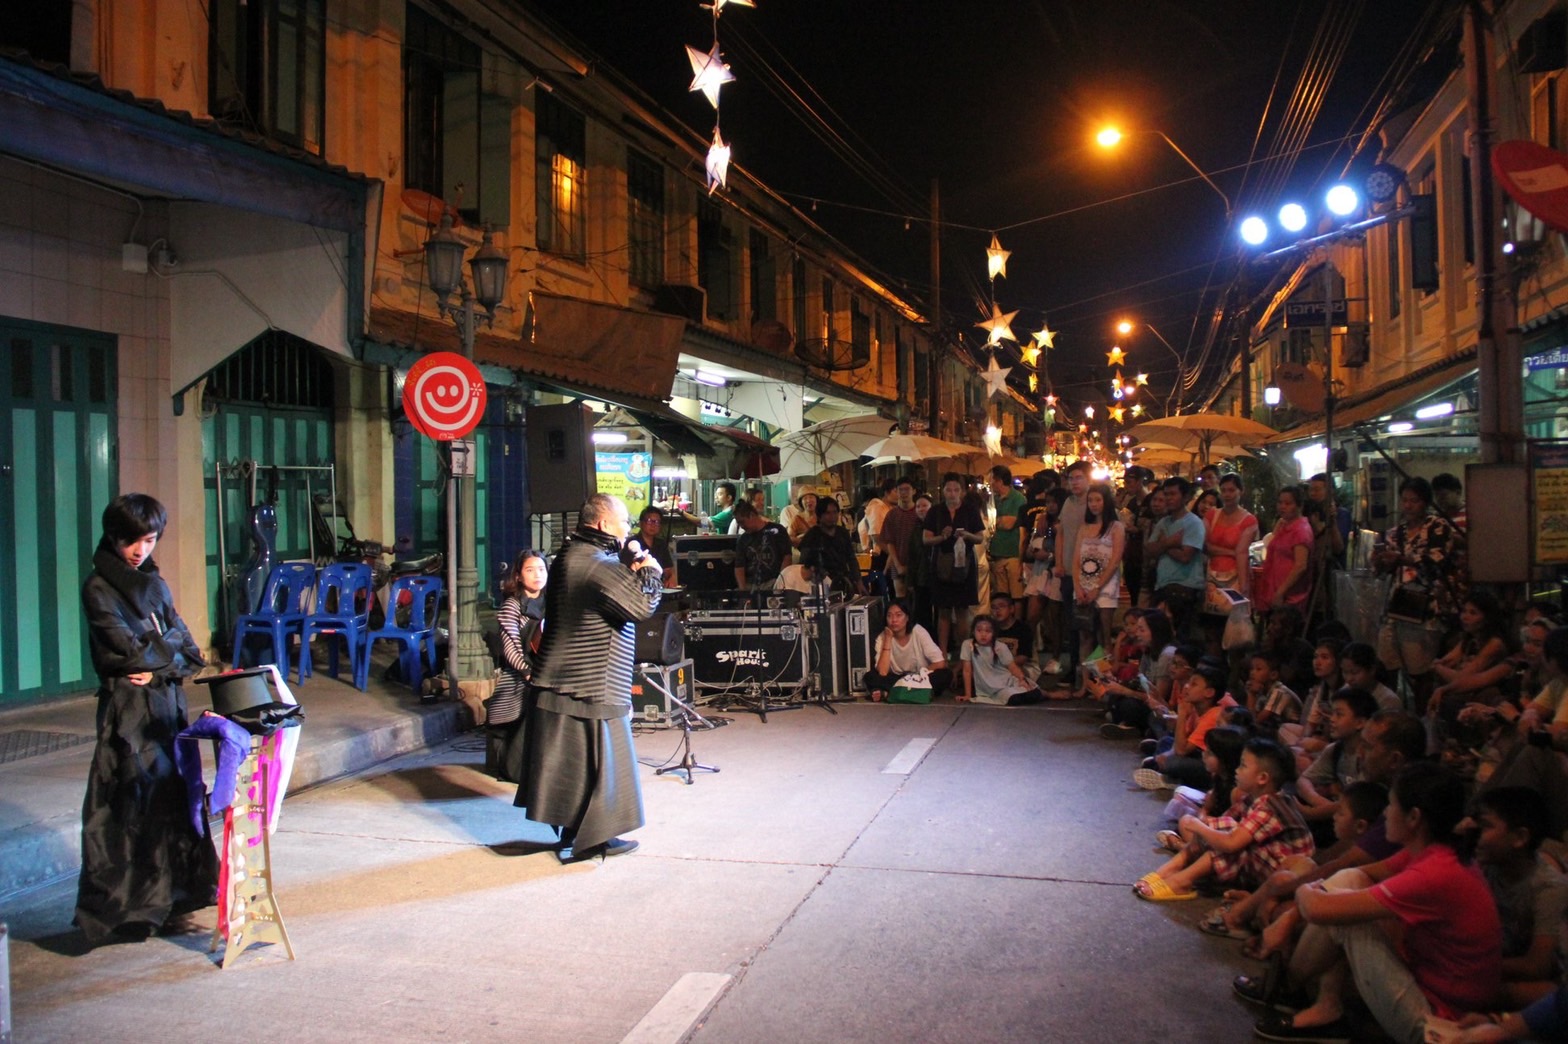 สามแพร่ง Face Street Performance เทศกาลศิลปะชุมชน Arts & Community Festival VK.Vich Vichayut Kanungchoti วิชยุตม์ คนึงโชติ มายากล รับแสดงมายากล Magic Class รับสอนมายากล มายากลเวที การแสดง Stage Magic แสดงวันเด็ก วันปีใหม่ วรรณศักดิ์ ศิริหล้า Wannasak Sirilar เล่านิทาน